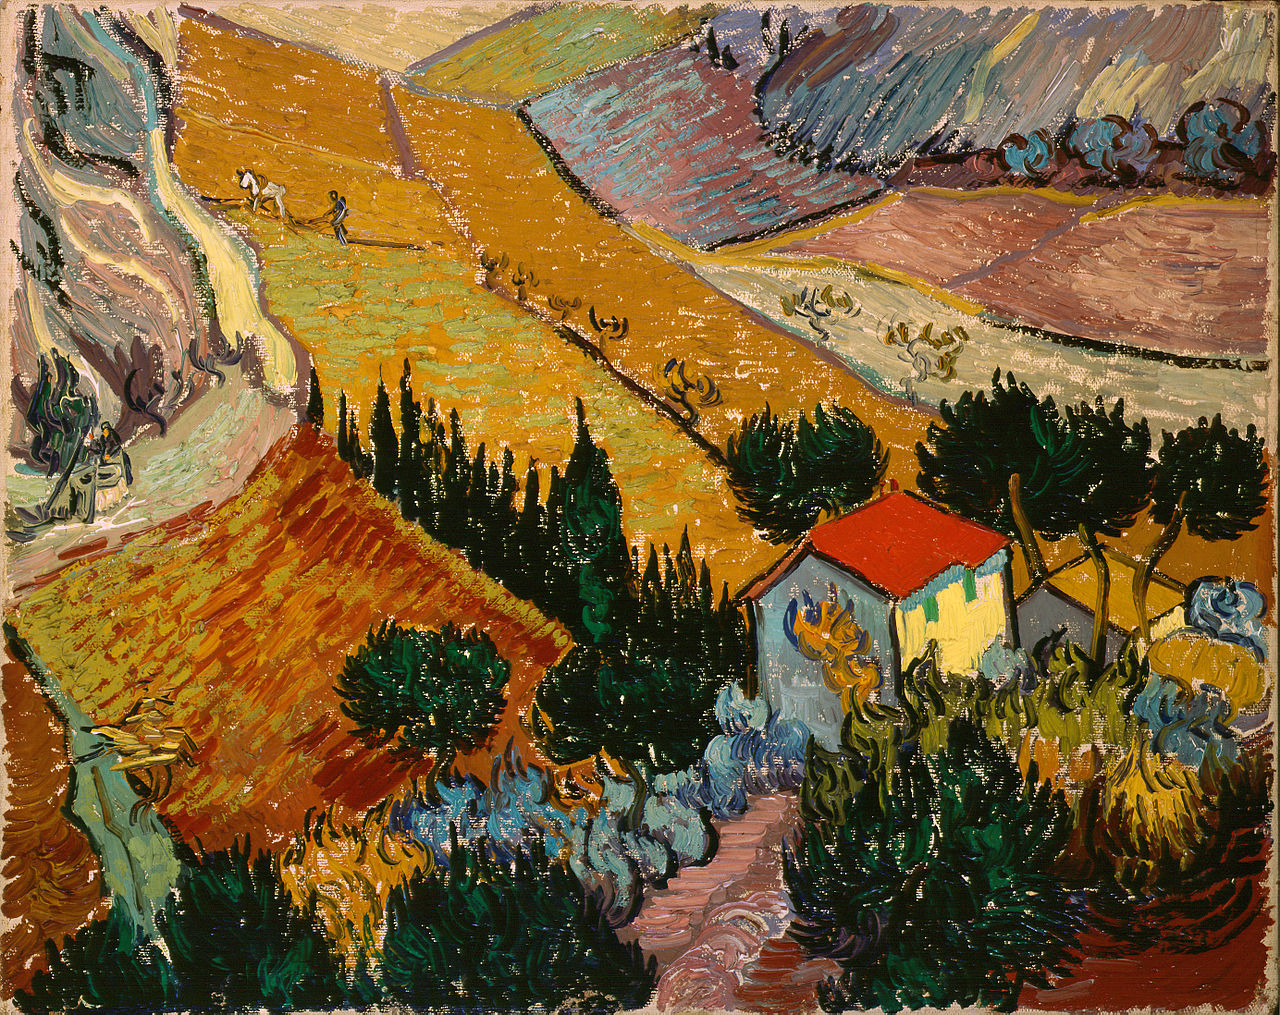 Paesaggio con casa e contadino by Vincent van Gogh - 1889 - 33 x 41,4 cm 